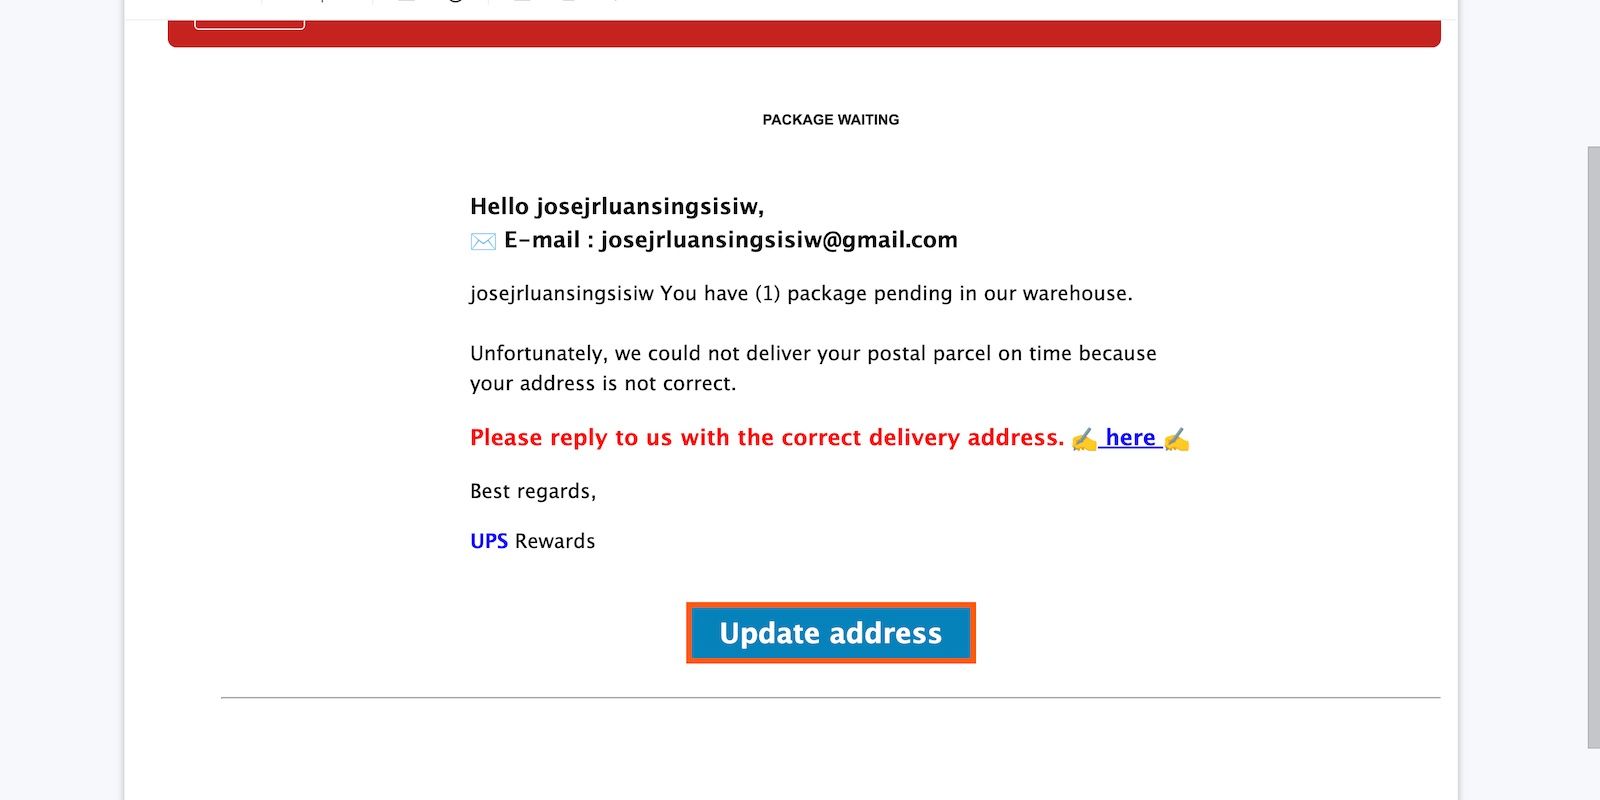 Livrare falsă a pachetului UPS pentru colet și adresă care nu există